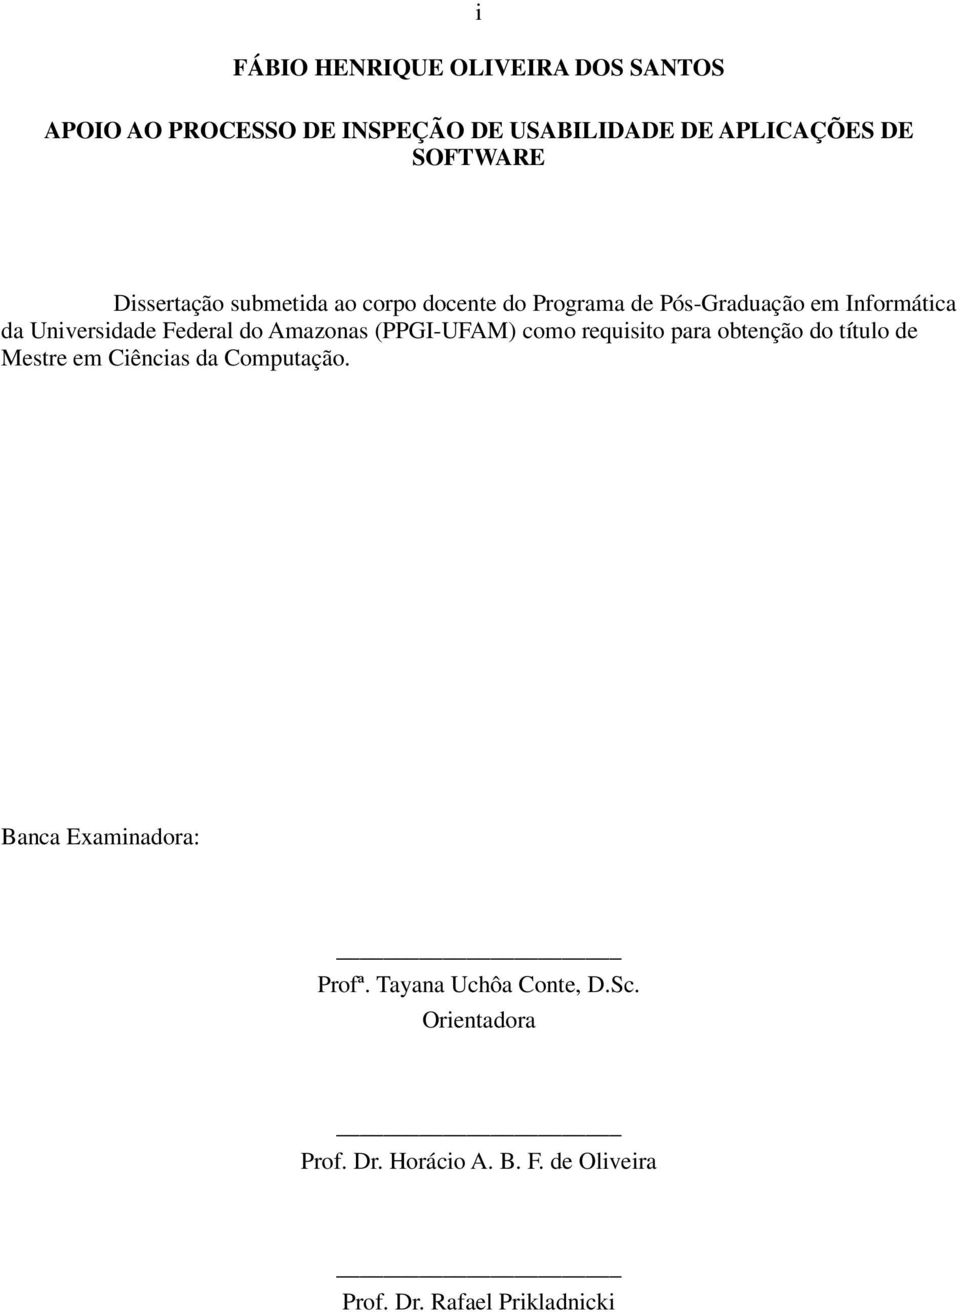 Amazonas (PPGI-UFAM) como requisito para obtenção do título de Mestre em Ciências da Computação.